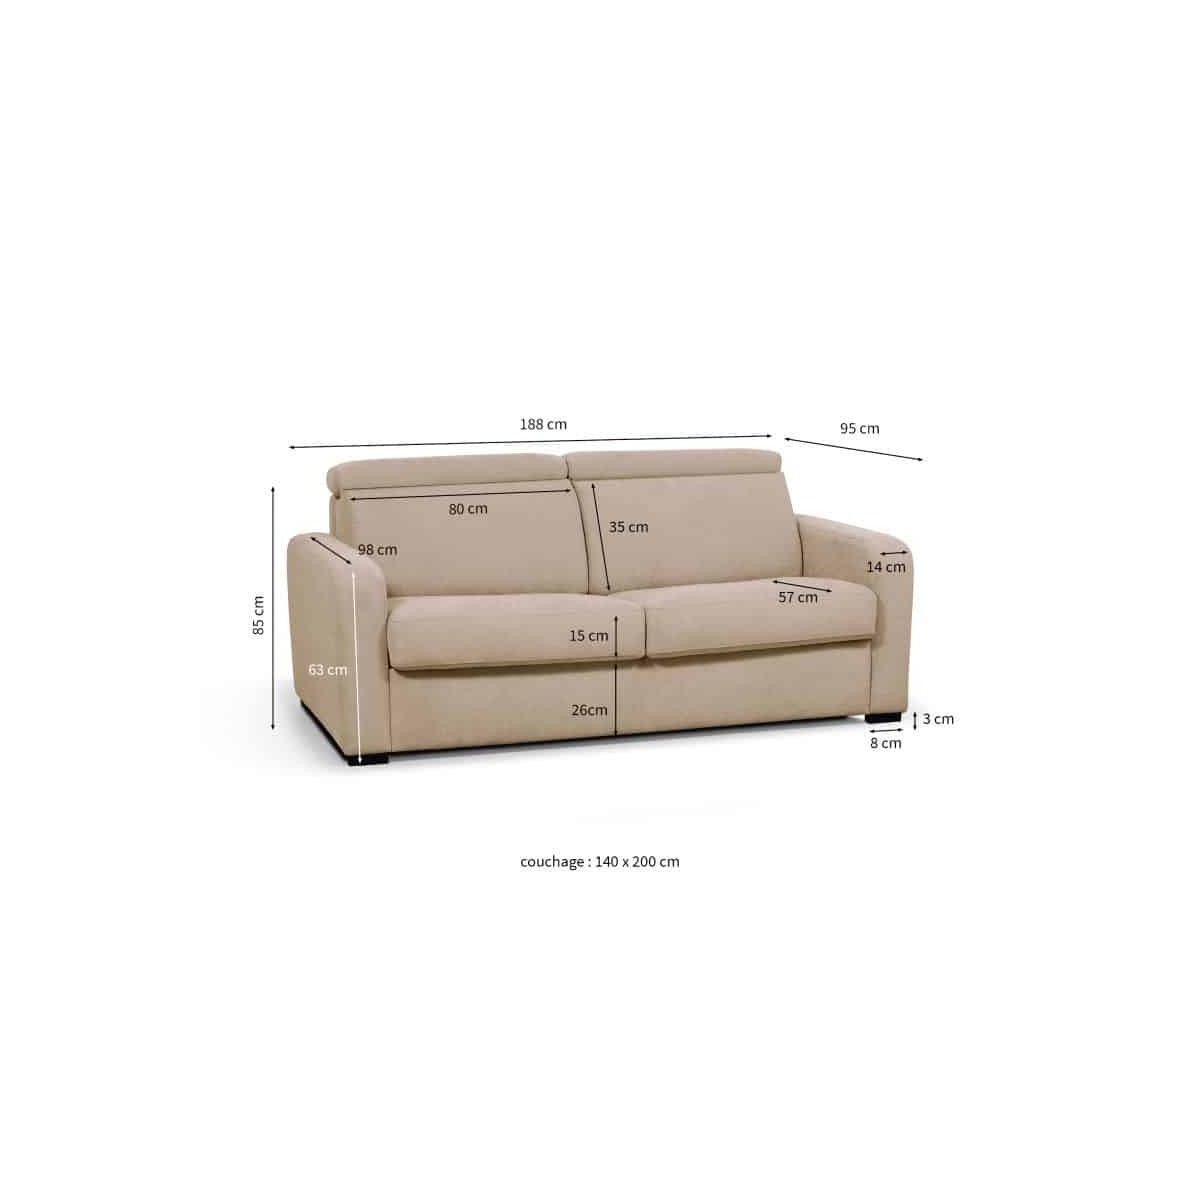 EVERGREENWEB – Sofá cama Clic Clac de tela color beige, sofá cama de 3  plazas de diseño moderno, práctico y cómodo con colchón de espuma – Modelo